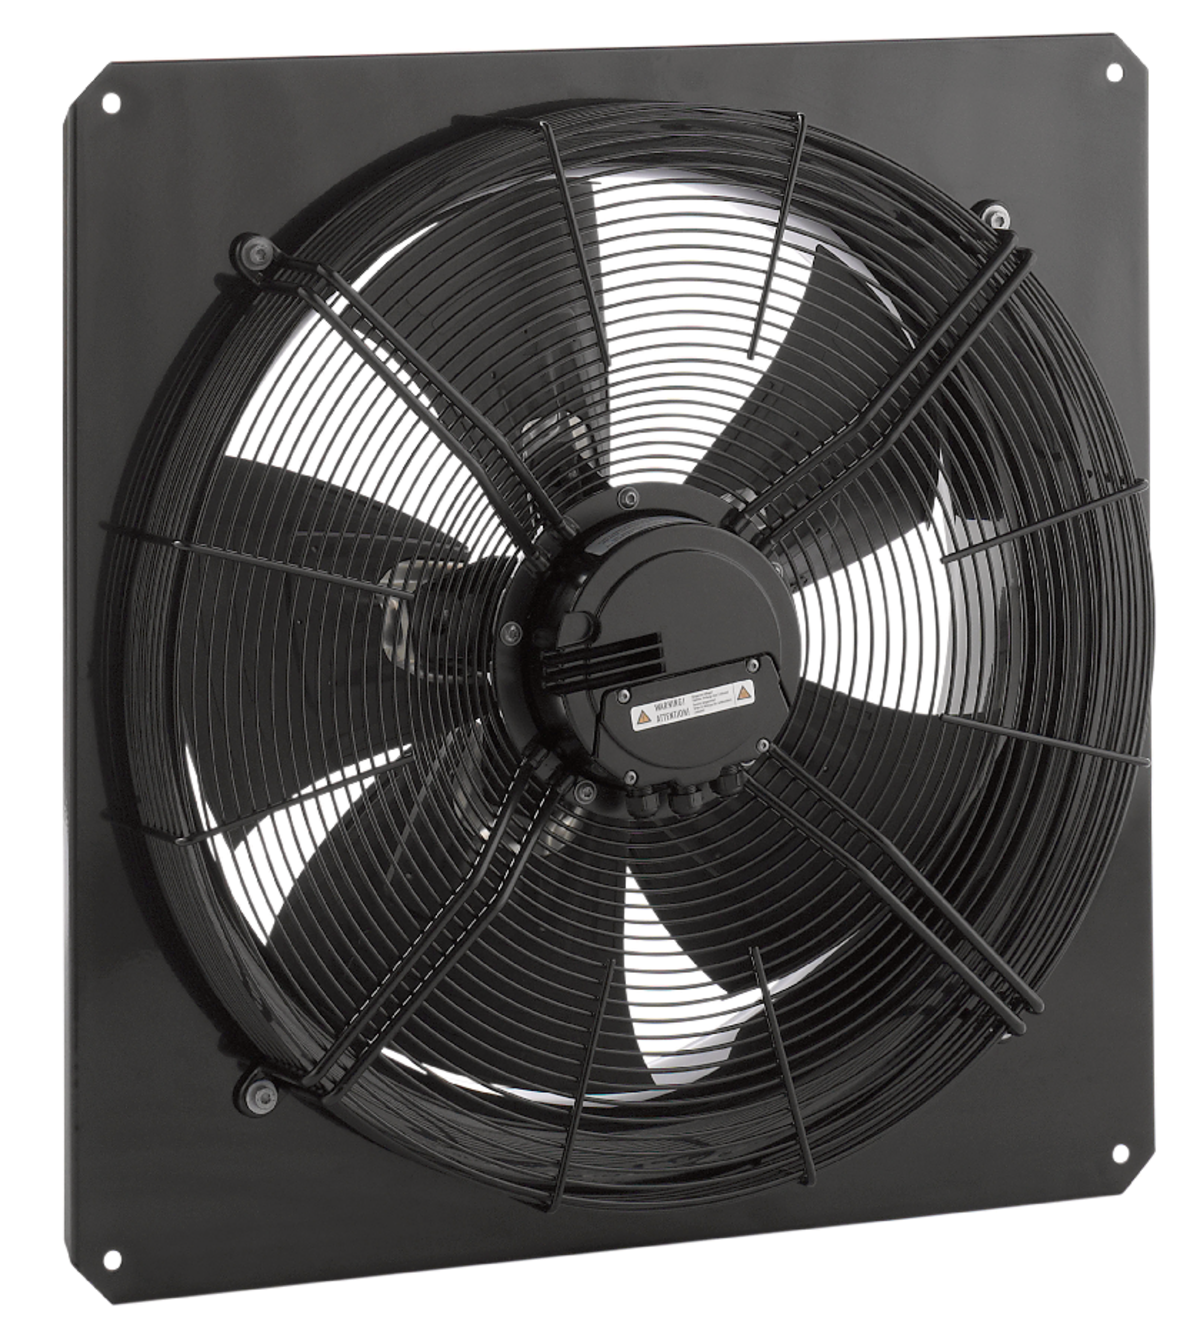 AW - Axiální ventilátory - Ventilátory - Výrobky - Systemair